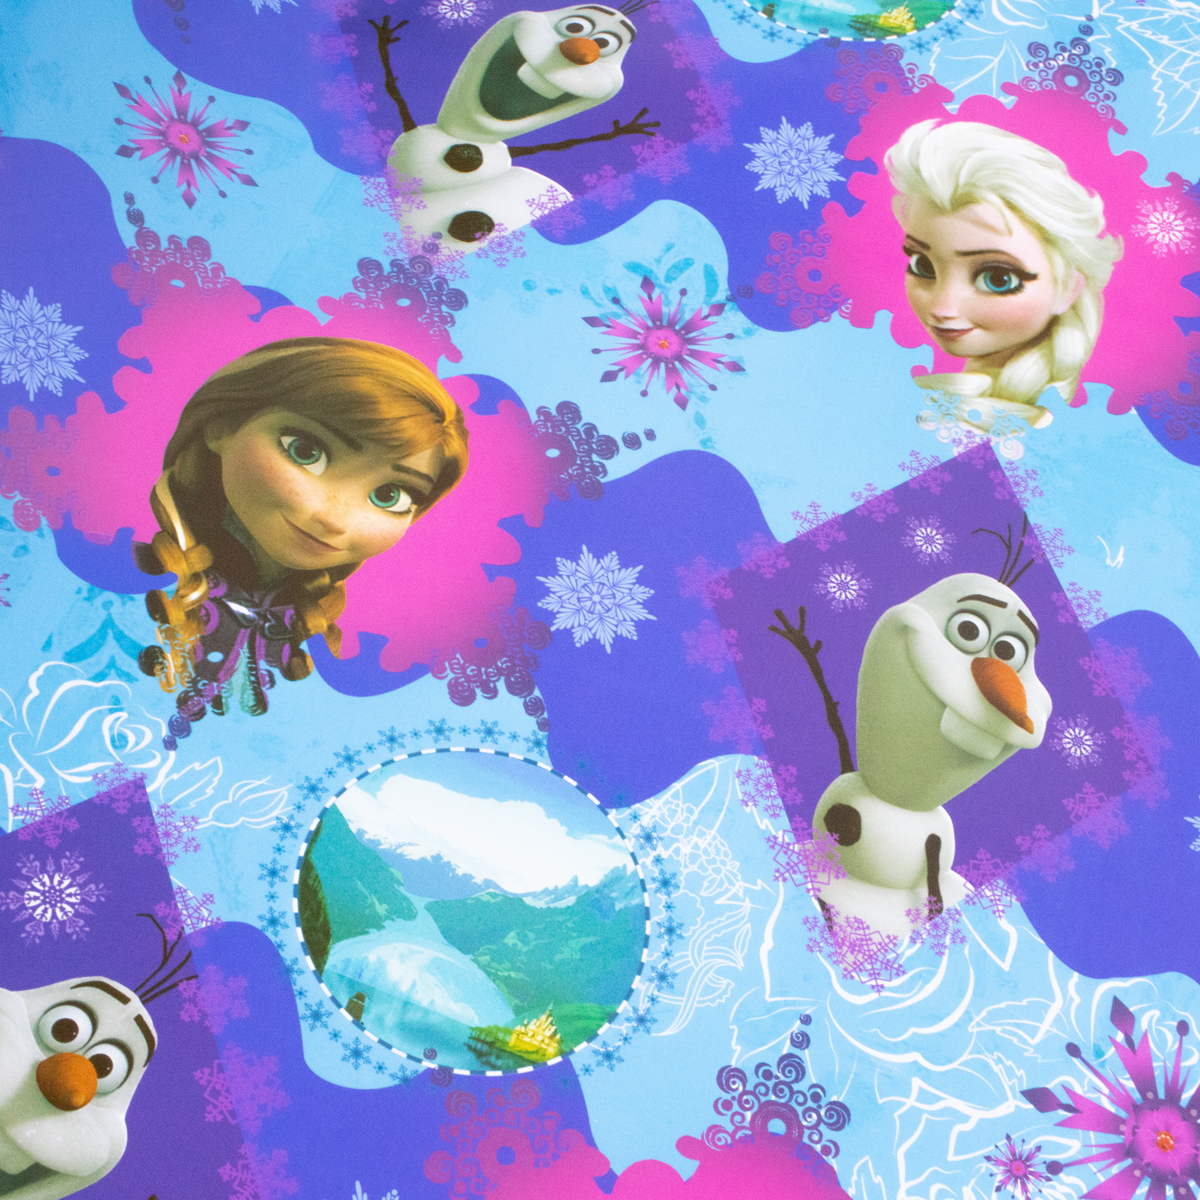 Papel de regalo con diseño Frozen